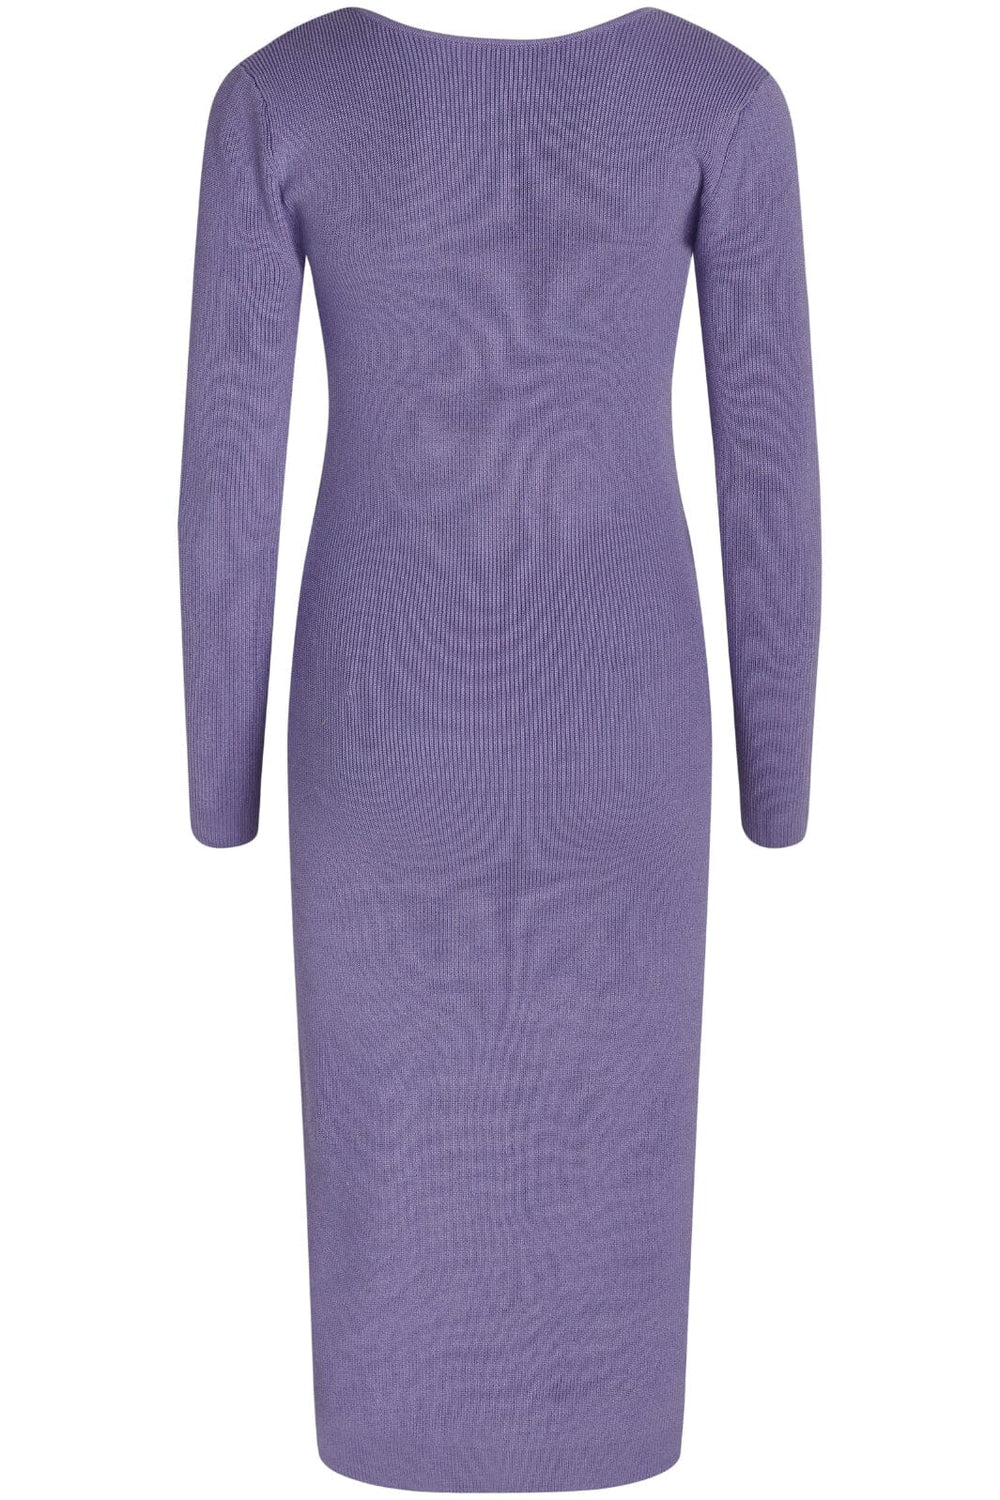 BZR - Lela Jenner dress - Lavender Kjoler 